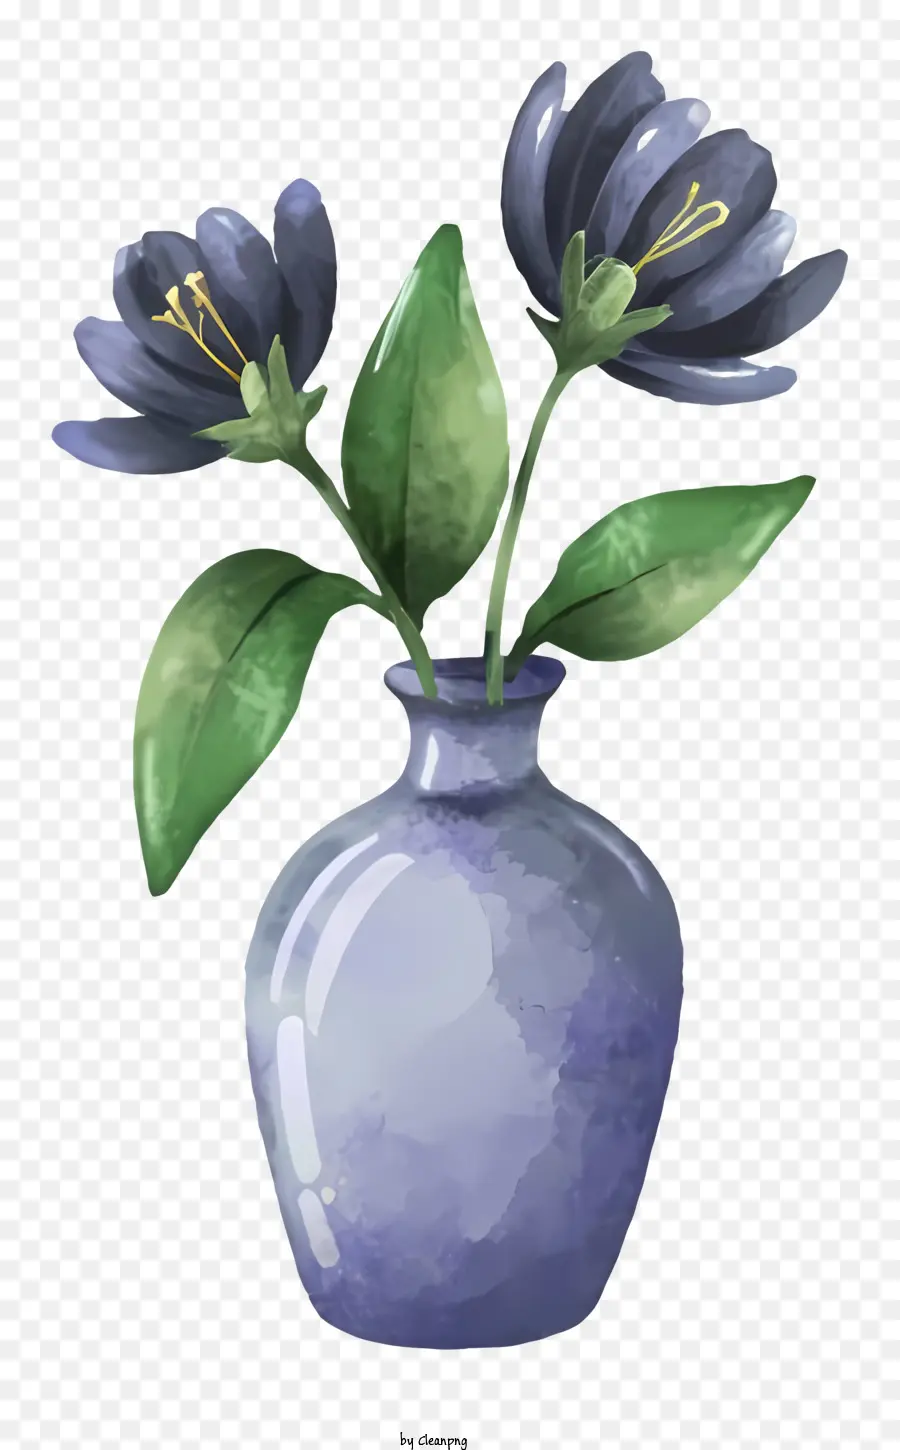 Gesteck - Blaue Vase mit zwei hellblauen Blumen